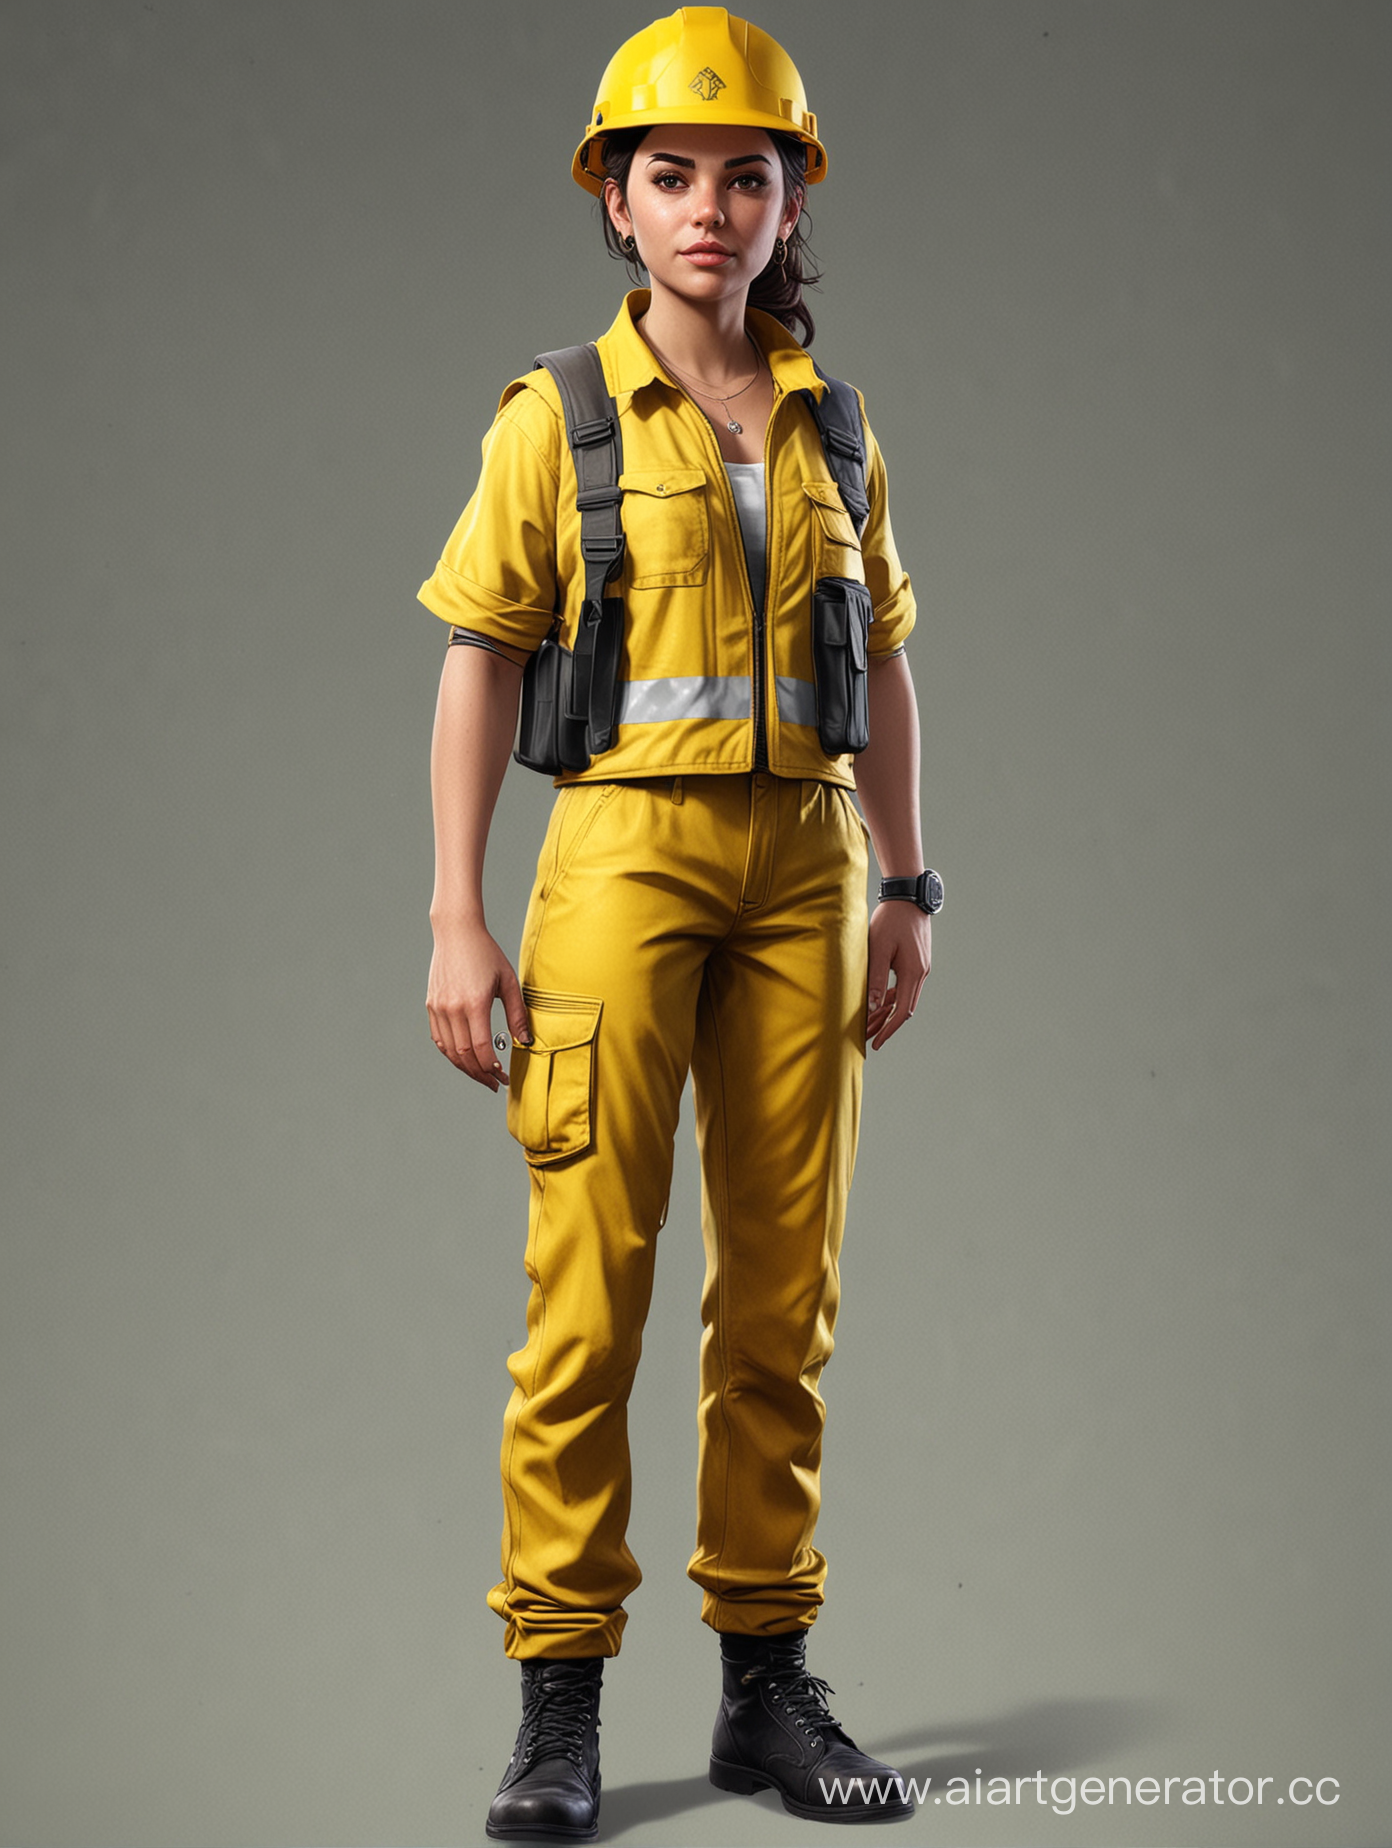 нарисуй персонажа в стиле гта 5 онлайн, в жёлтом строительном жилете и желтой каске. В полный рост, больше деталей